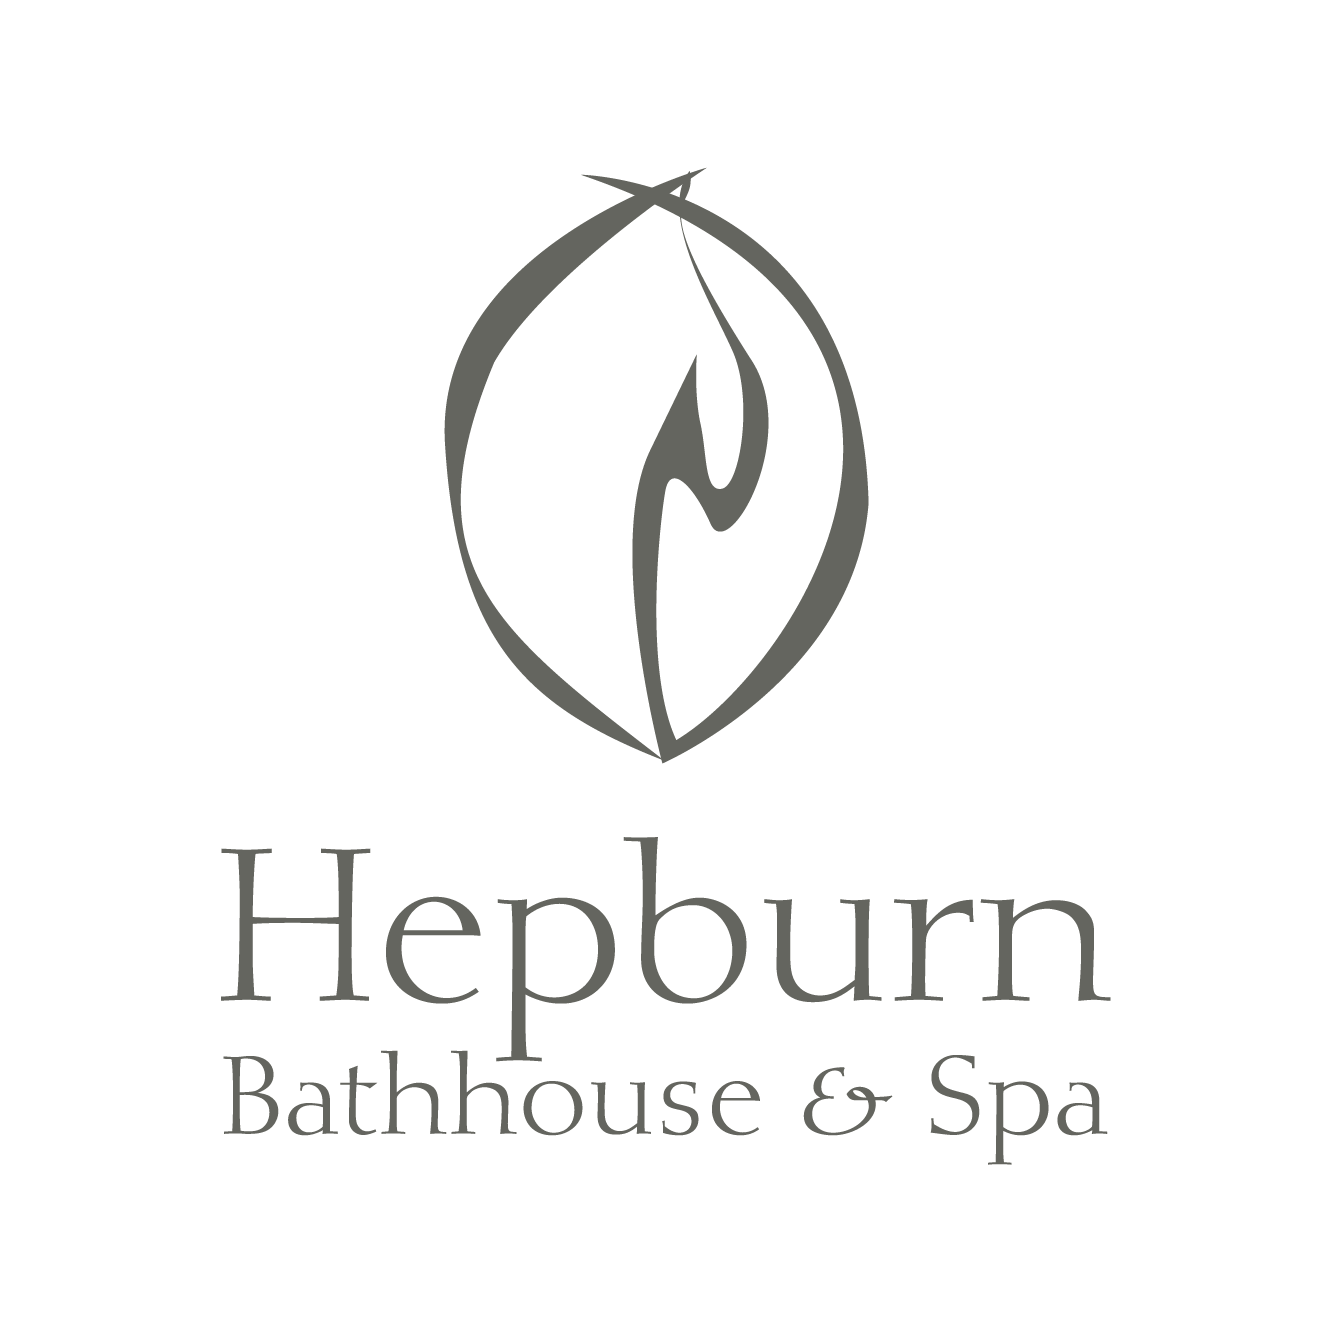 Hepburn Bathhouse and Spa